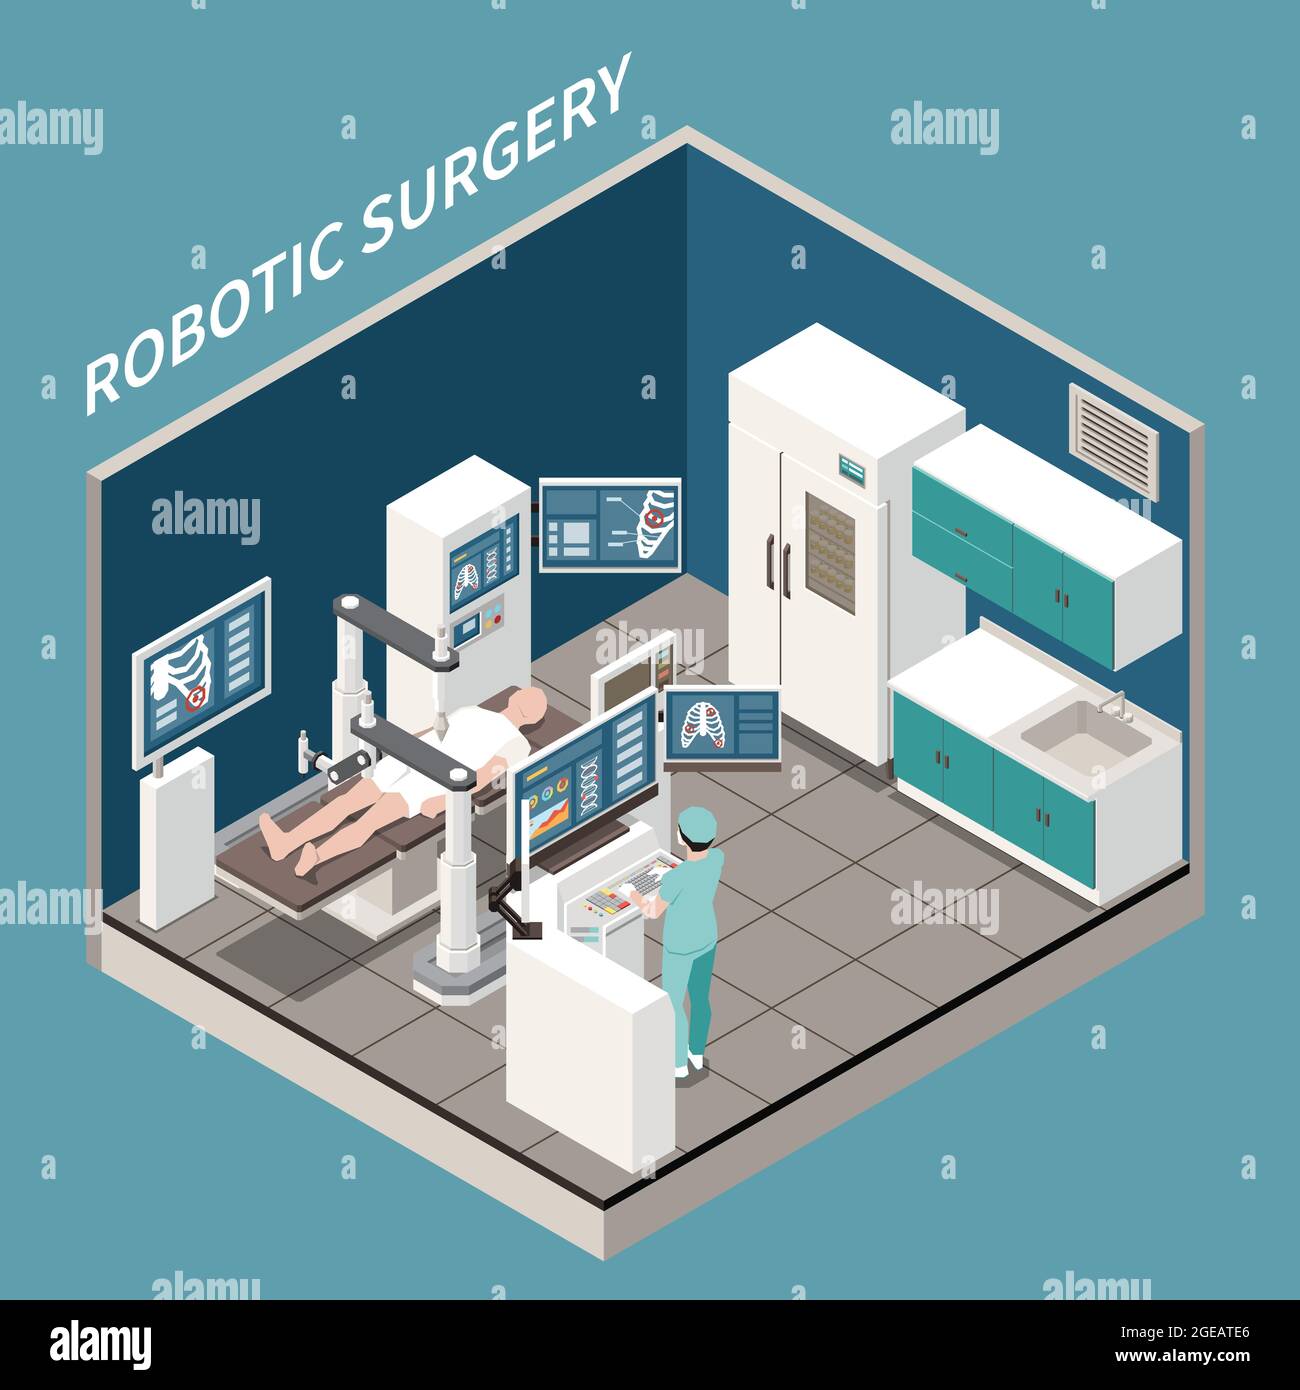 Isometrisches Konzept für die Roboterchirurgie mit Vektordarstellung der Symbole für die medizinische Behandlung Stock Vektor